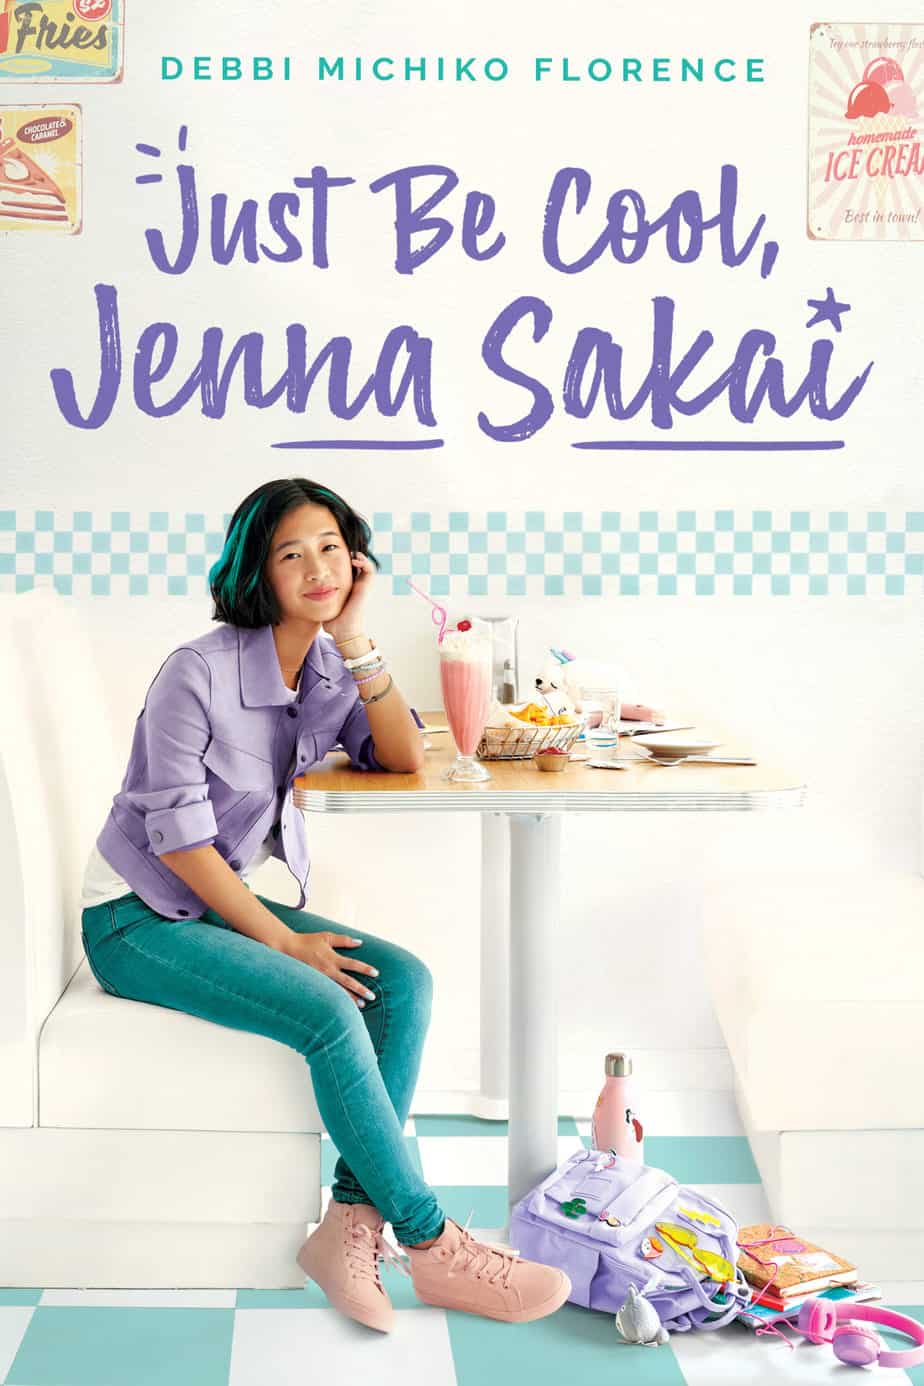 Just Be Cool Jenna Sakai by Debbi Michiko Florence